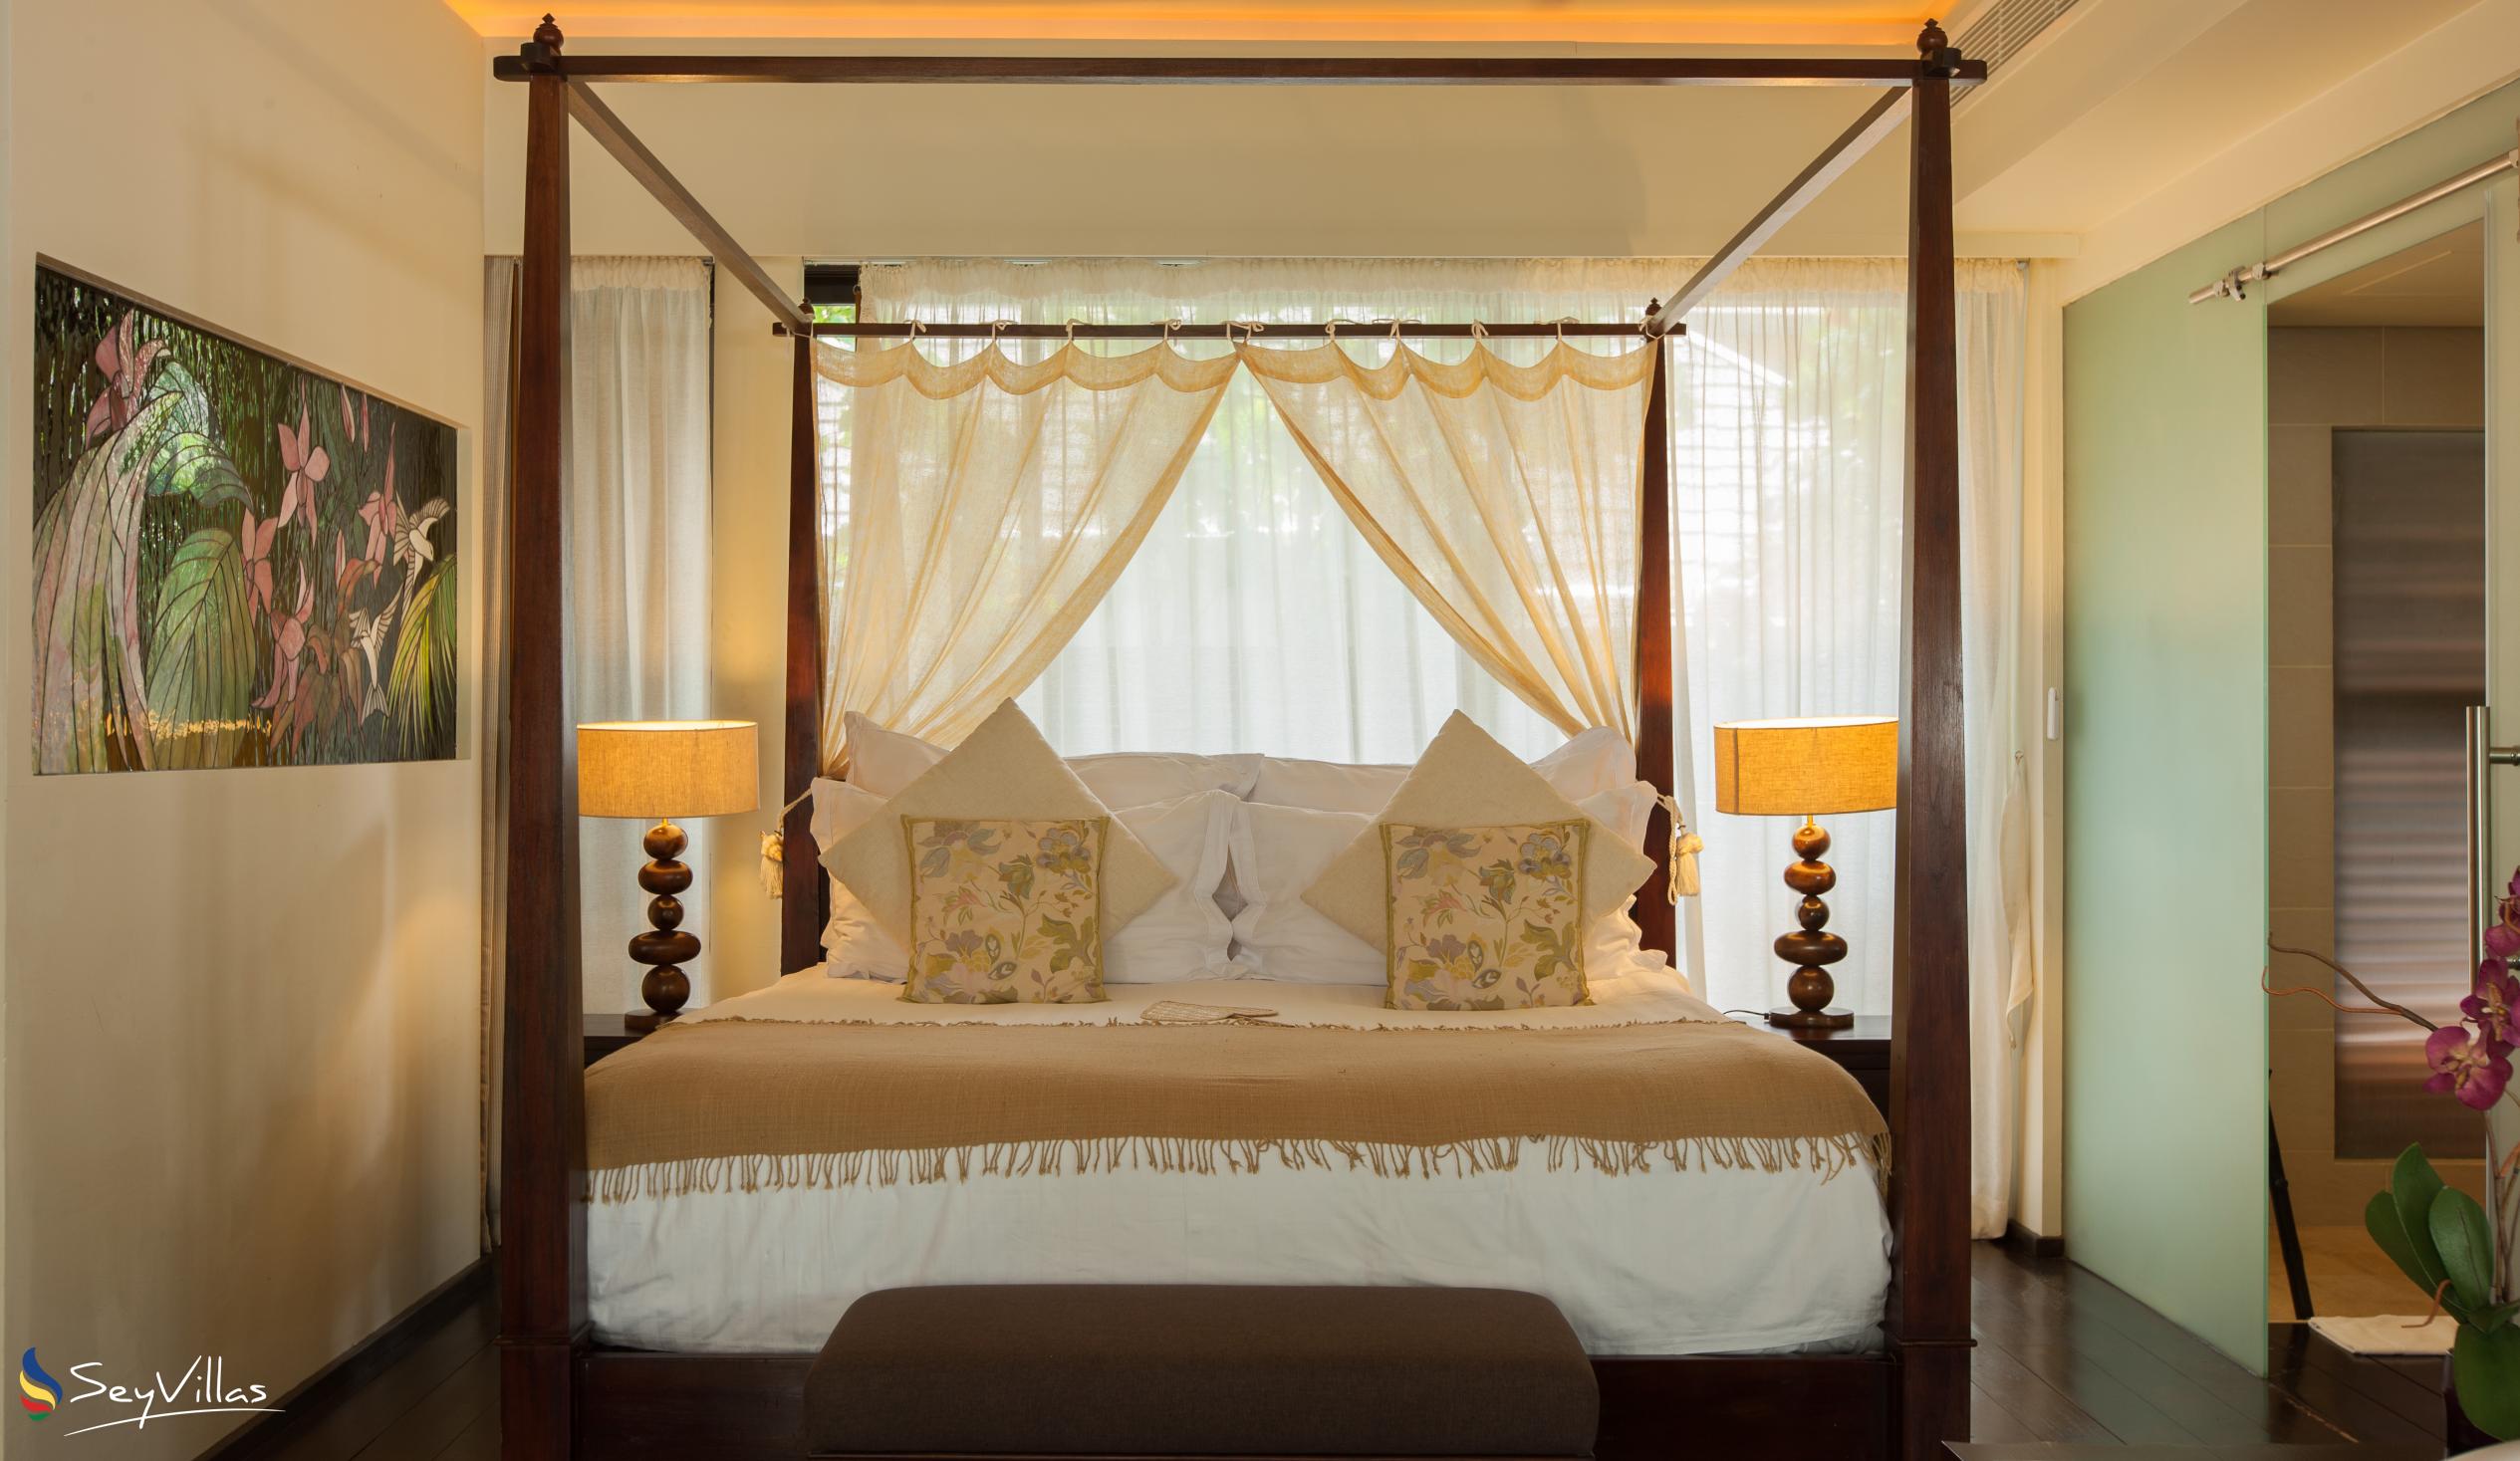 Foto 55: Dhevatara Beach Hotel - Front-Suite mit Ozeanblick - Praslin (Seychellen)